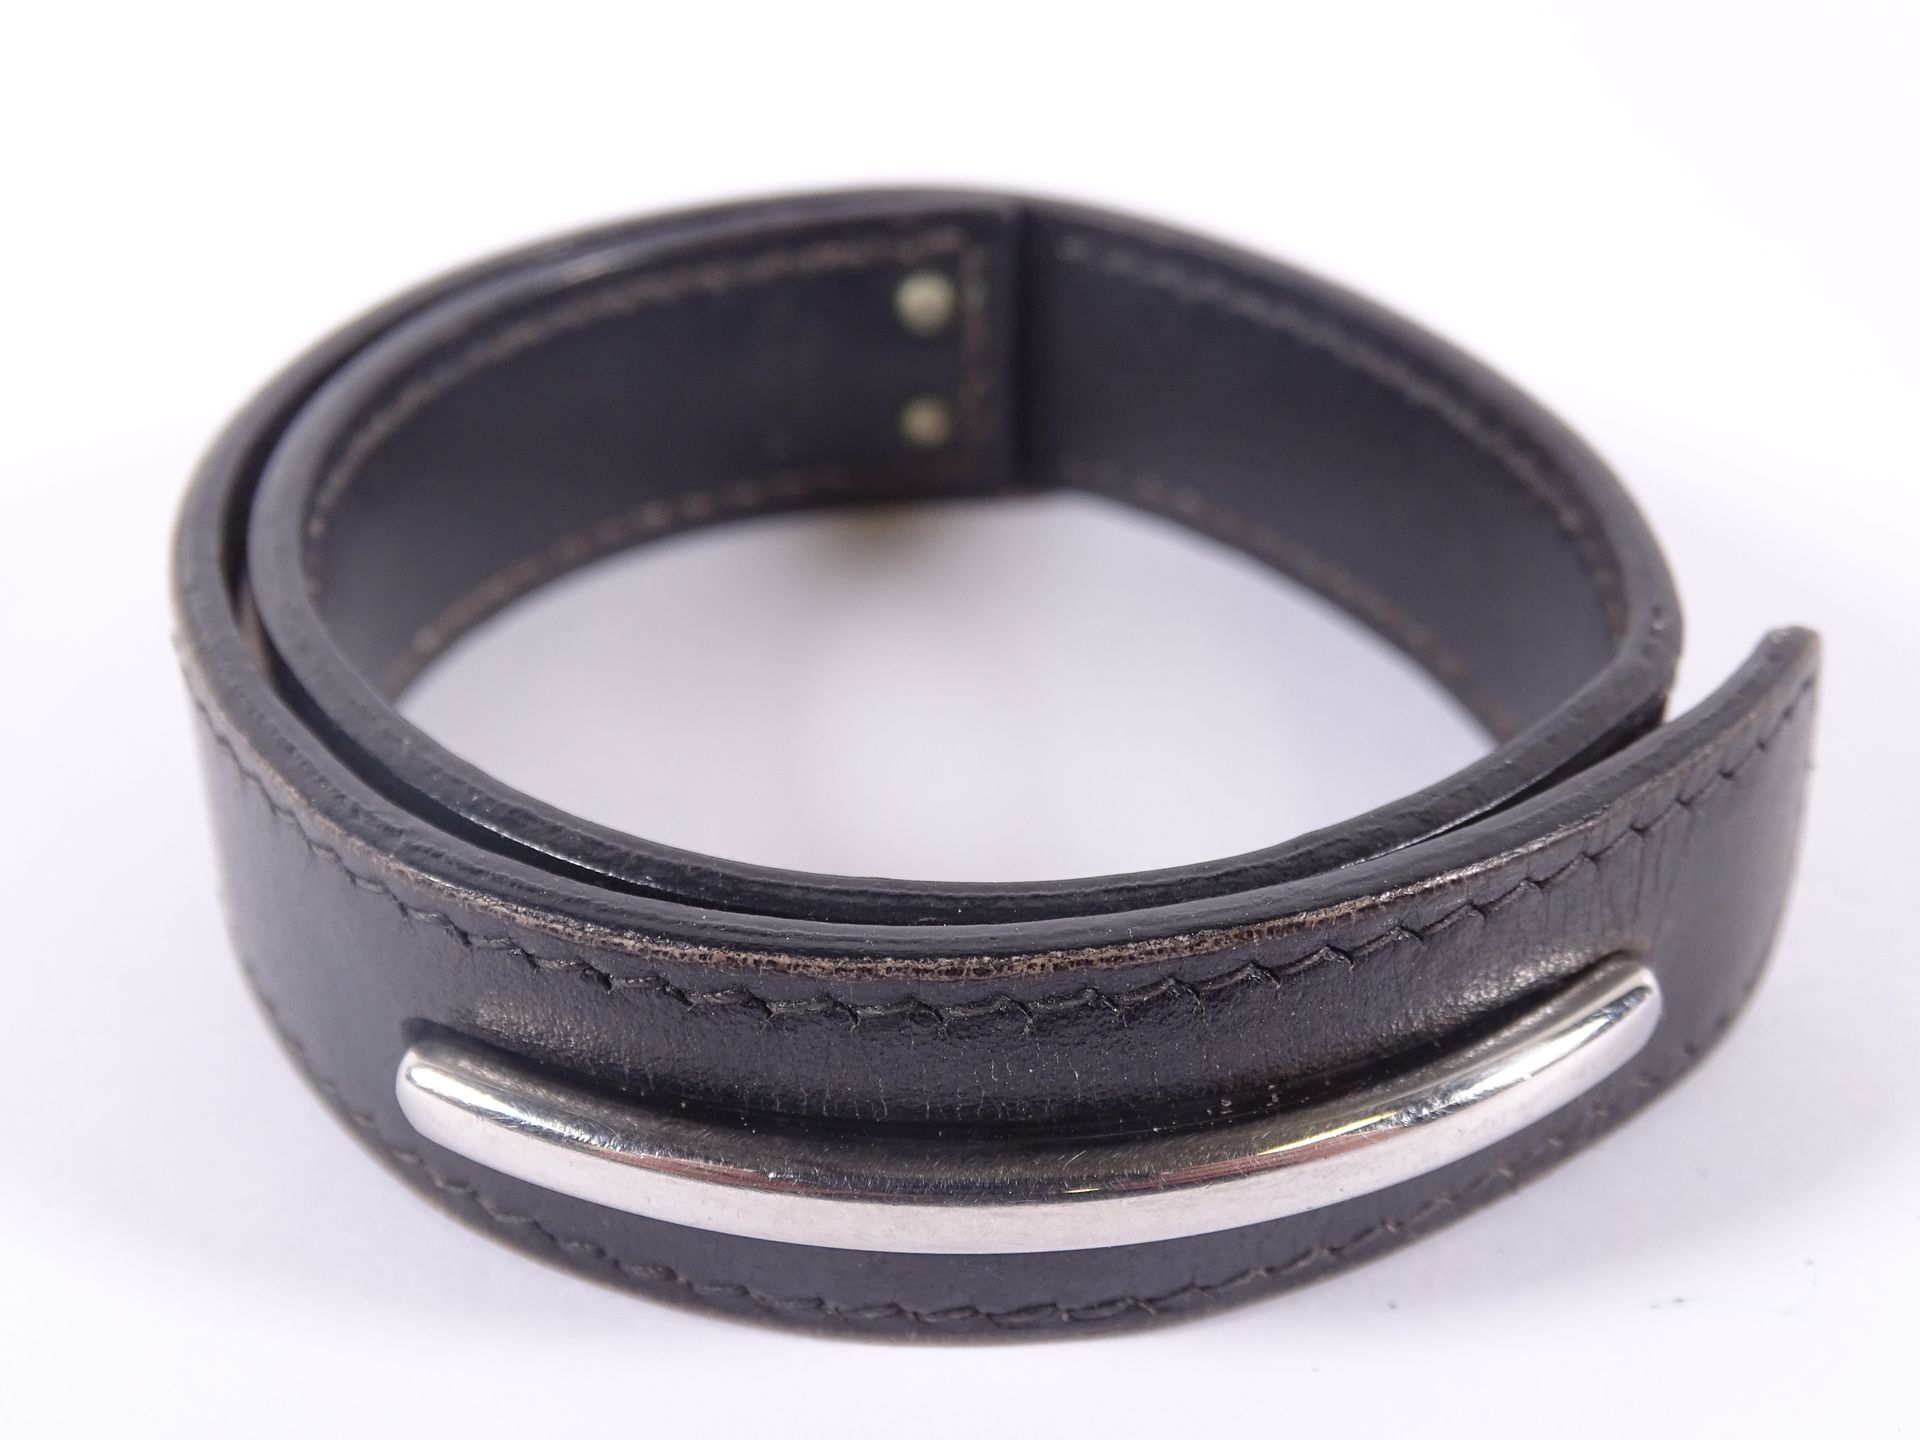 HERMES Armband aus schwarzem Leder mit doppelter Windung und Spangendekor.

Durc&hellip;